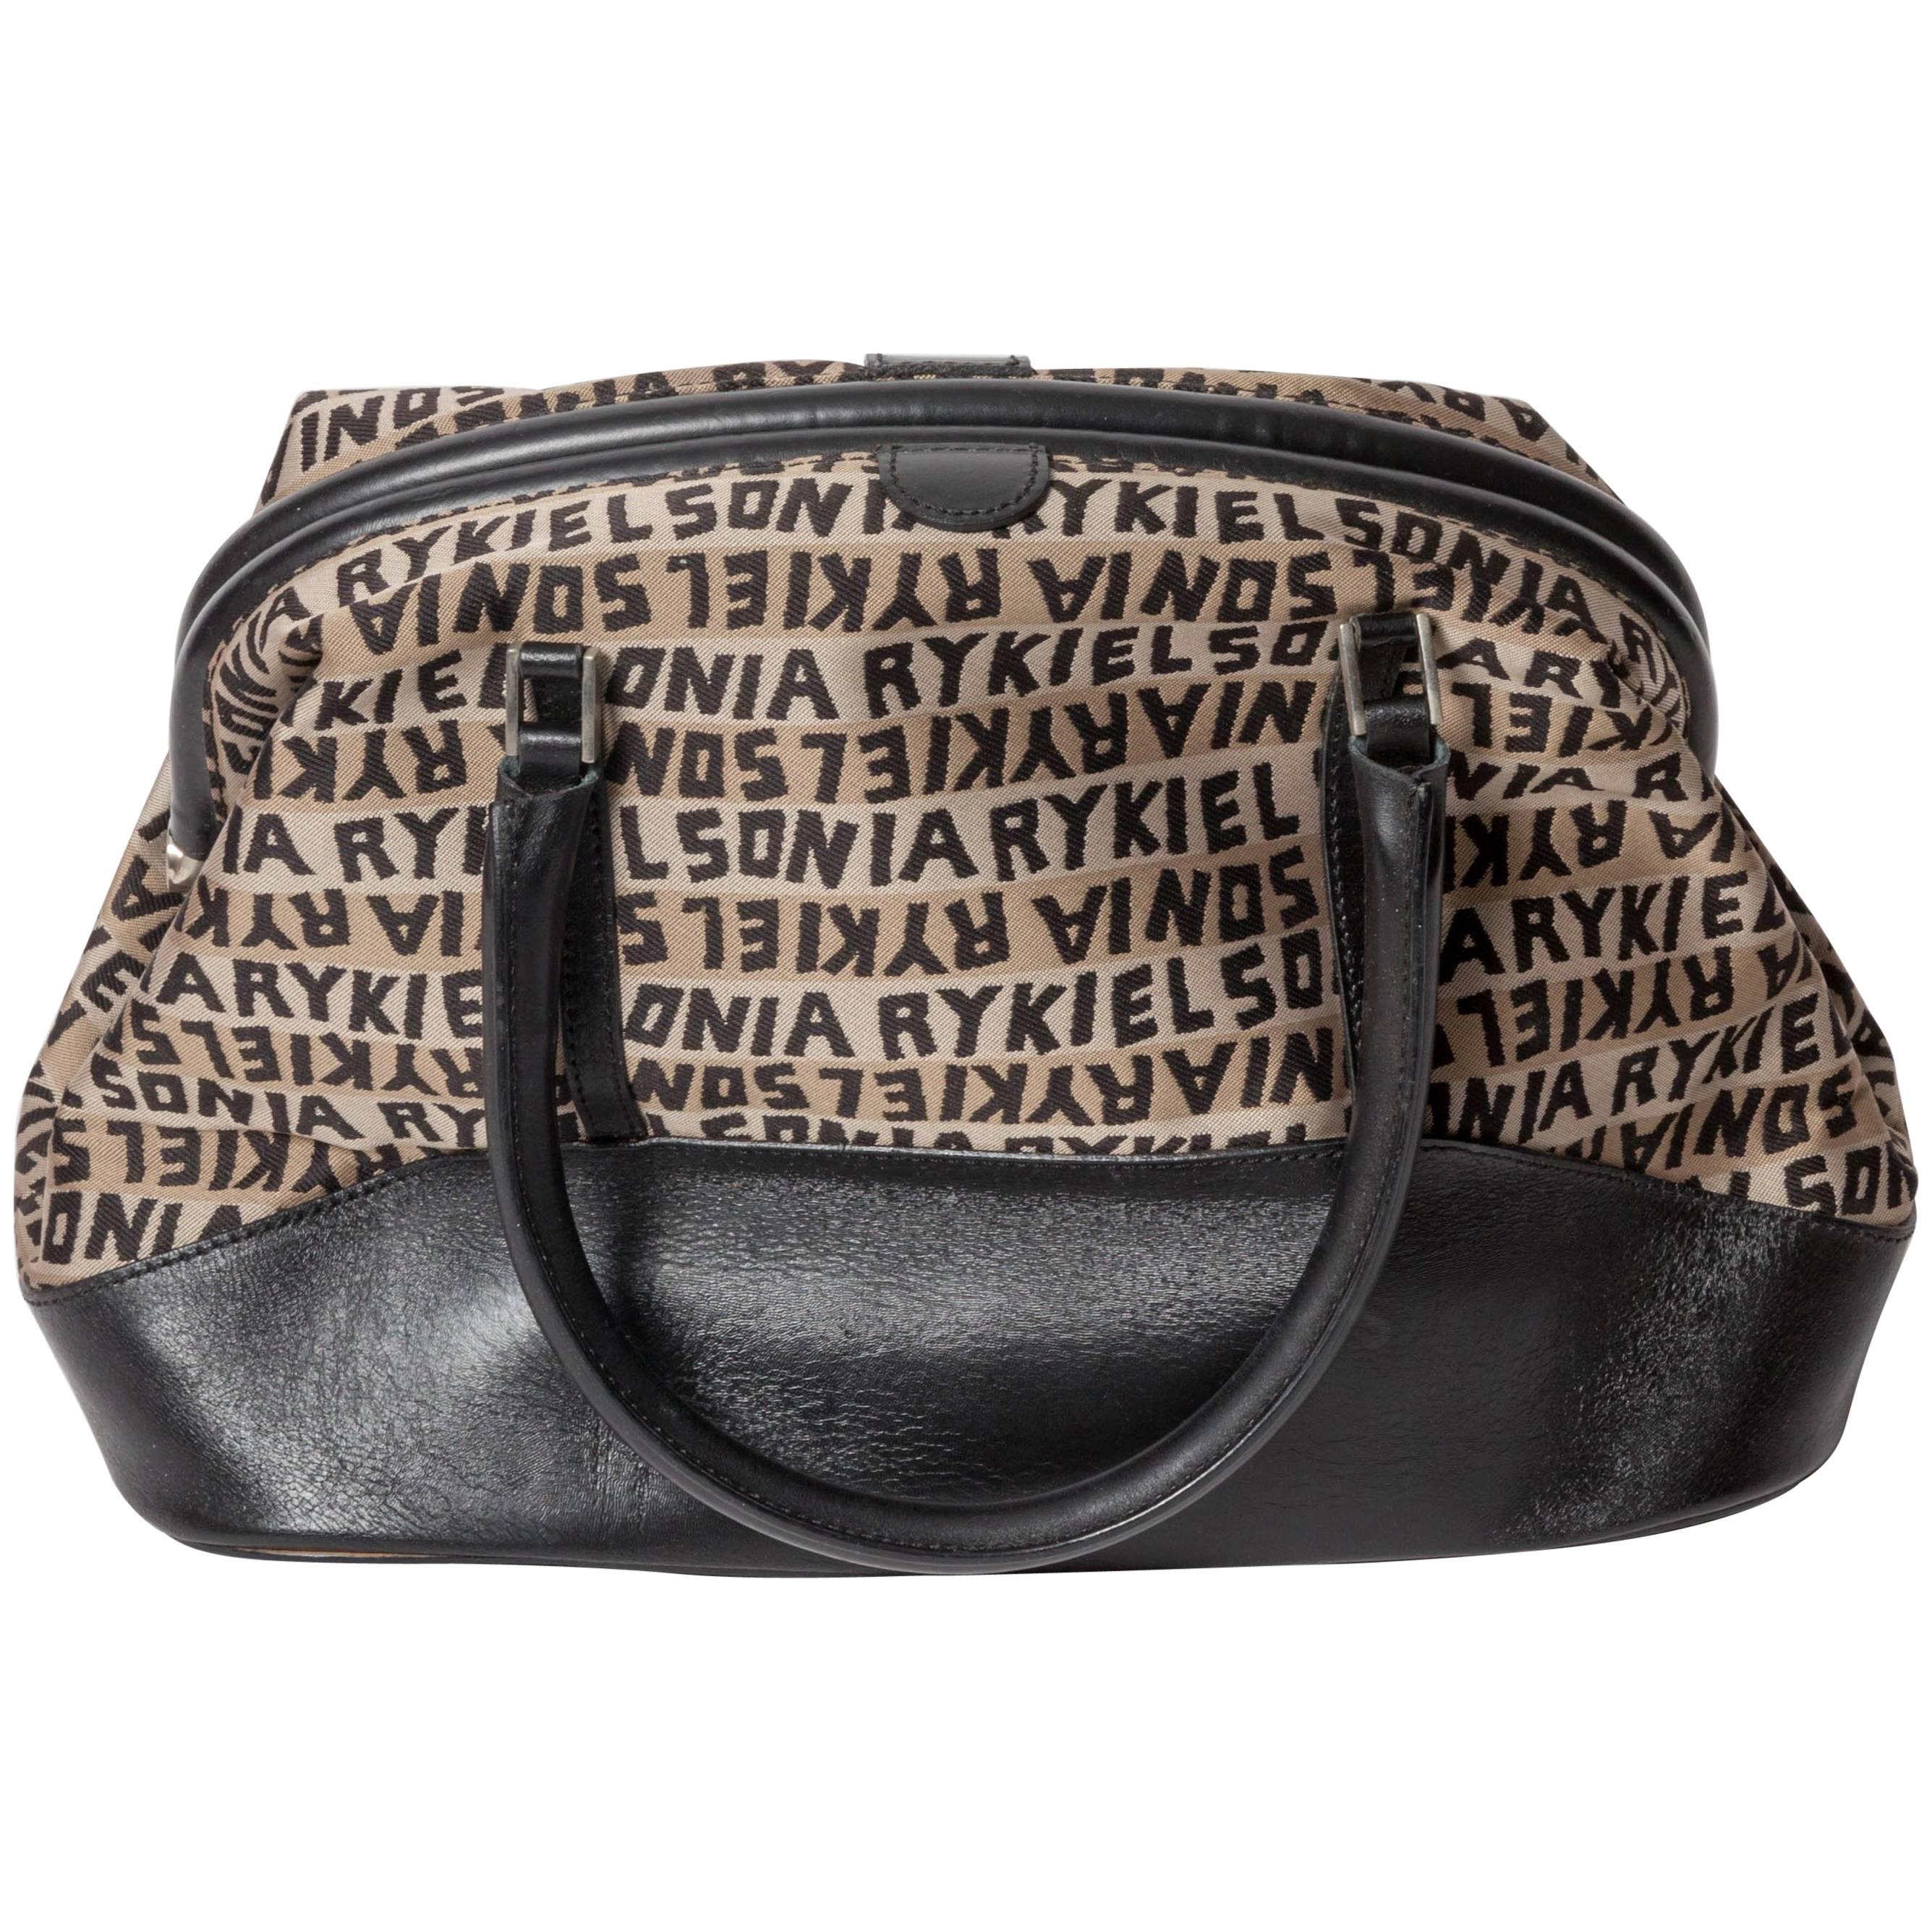 Vintage Sonia Rykiel Handbag